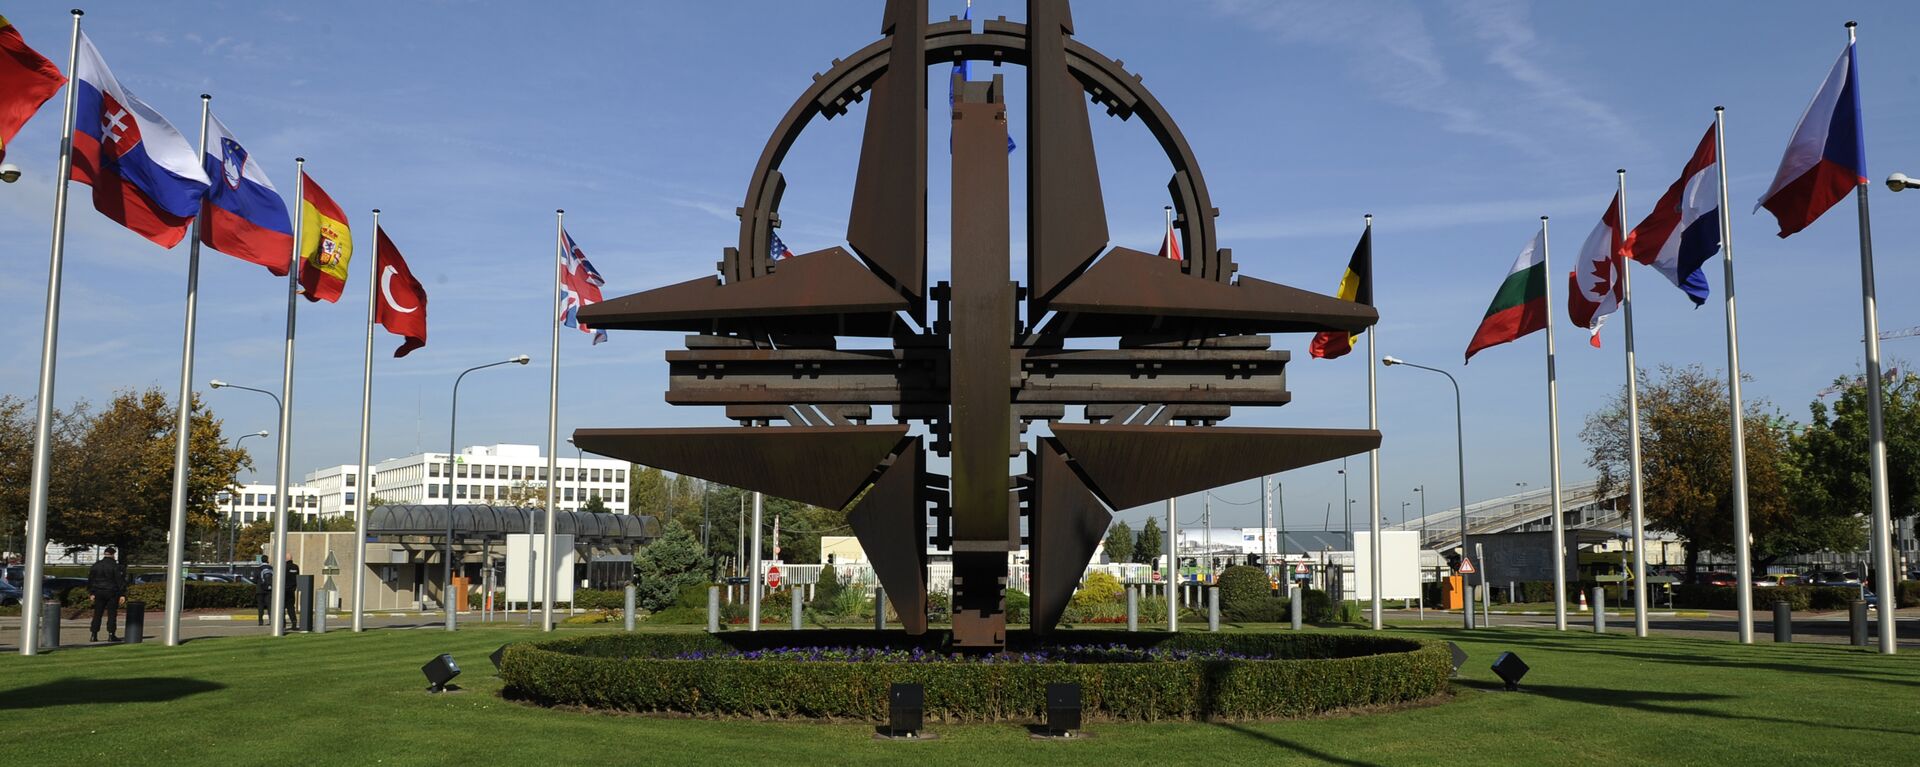 НАТО симбол у Бриселу - Sputnik Србија, 1920, 13.06.2021